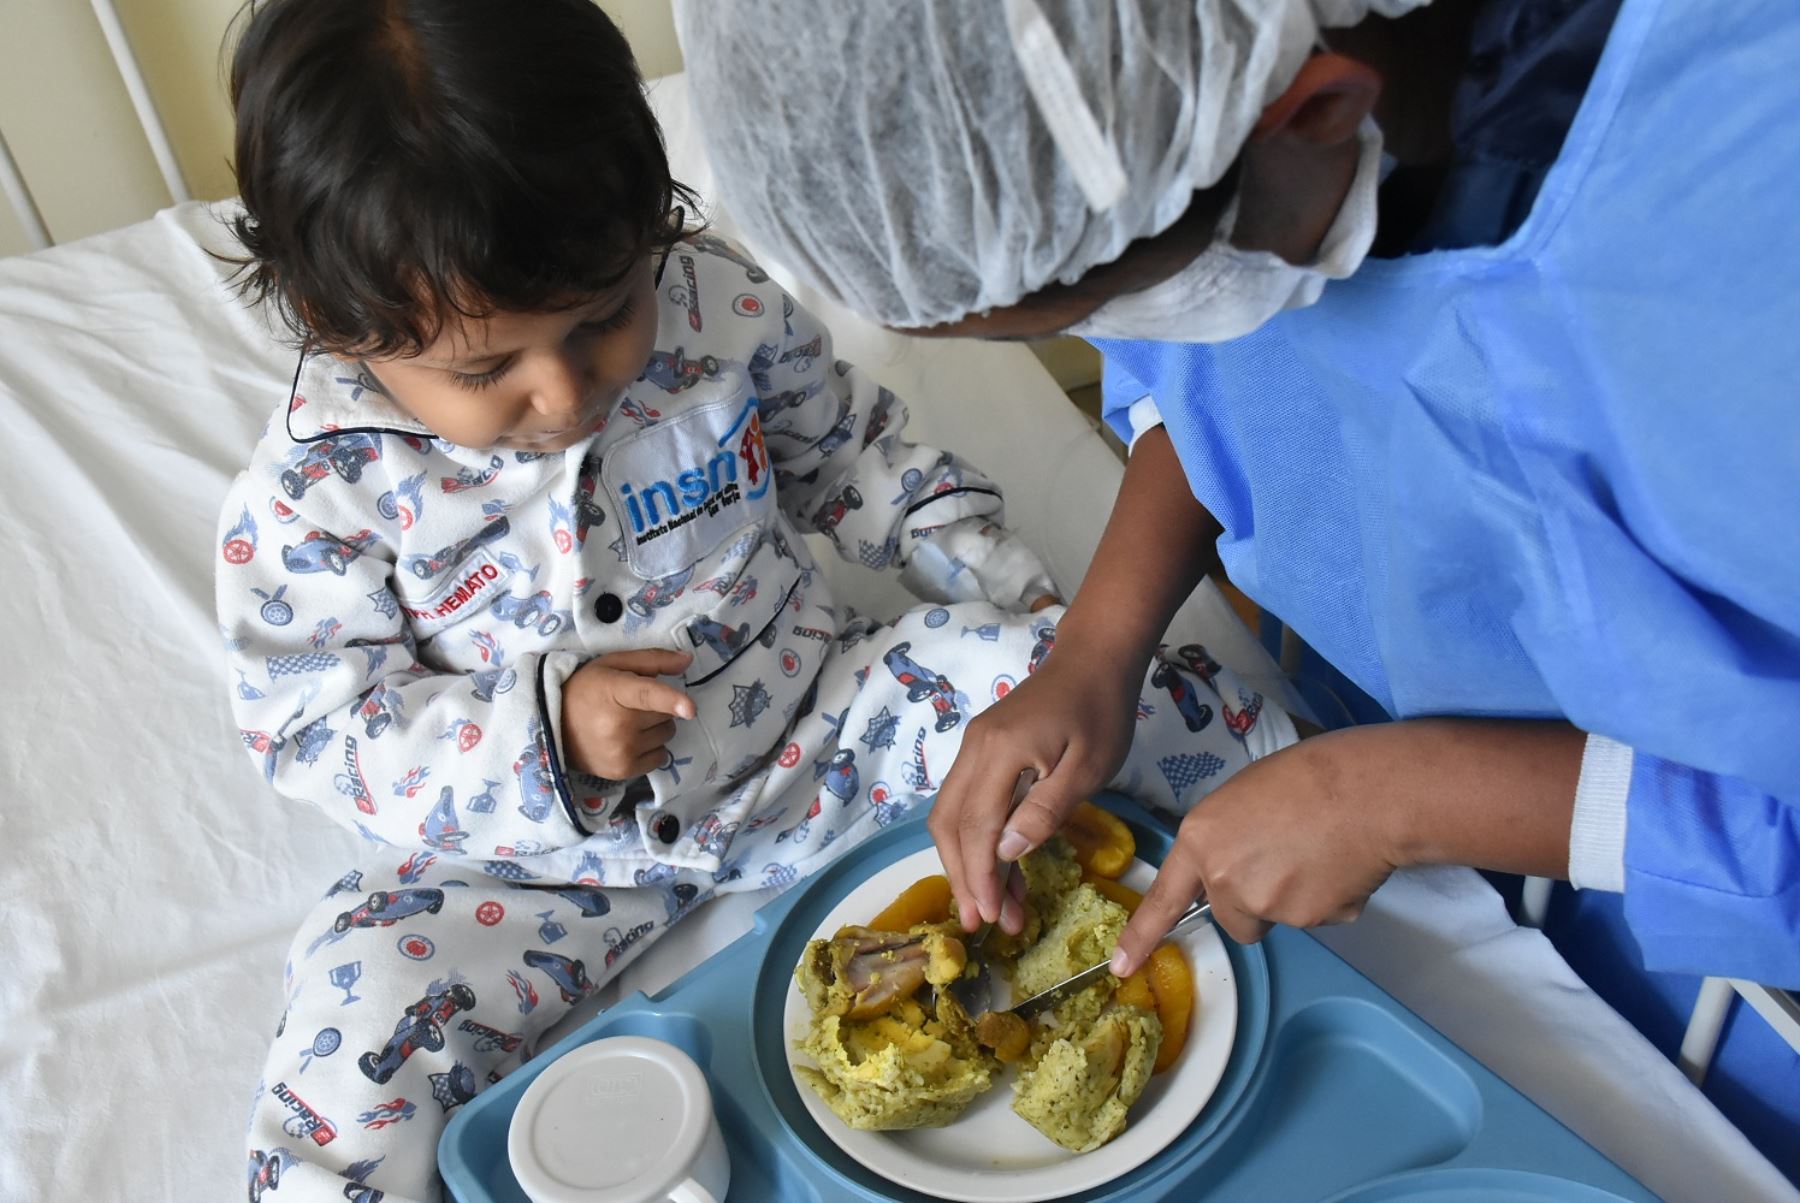 Soporte nutricional que ofrece el INSN - San Borja a niños y niñas hospitalizados ganó premio de Buenas Prácticas 2017 de Gerentes Públicos, en categoría Nutrición Materno Infantil.